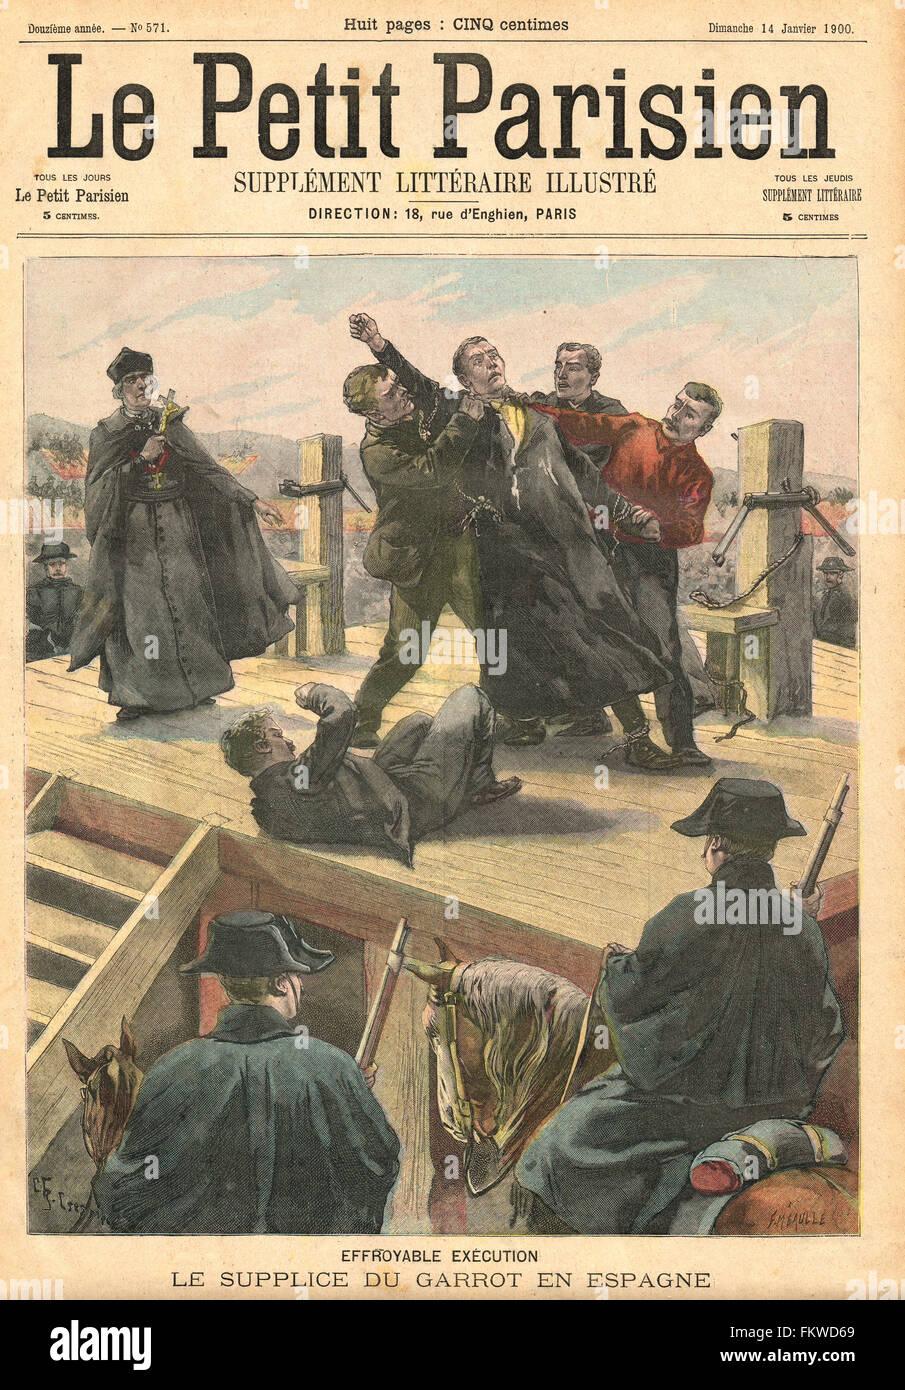 Exécution par gartitting en Espagne 1900. Illustration du petit parisien dans le journal français illustré Banque D'Images